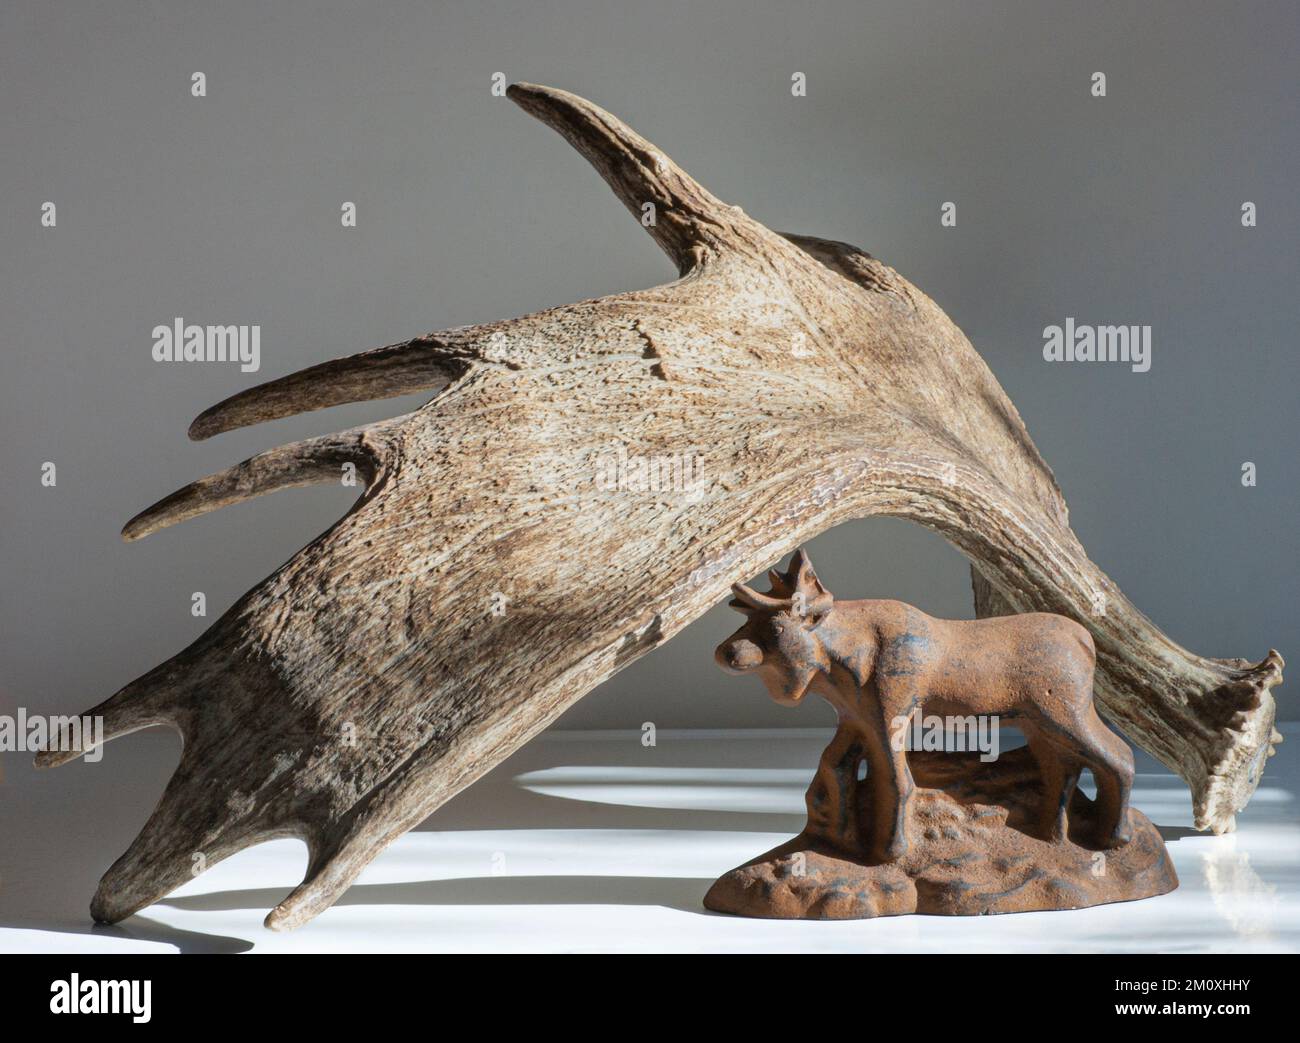 La corna di Moose incornicia la statua in metallo del mammifero sul tavolo. Il decoratore vede texture, punti, corna o corna come enfasi del confronto delle dimensioni. Foto Stock